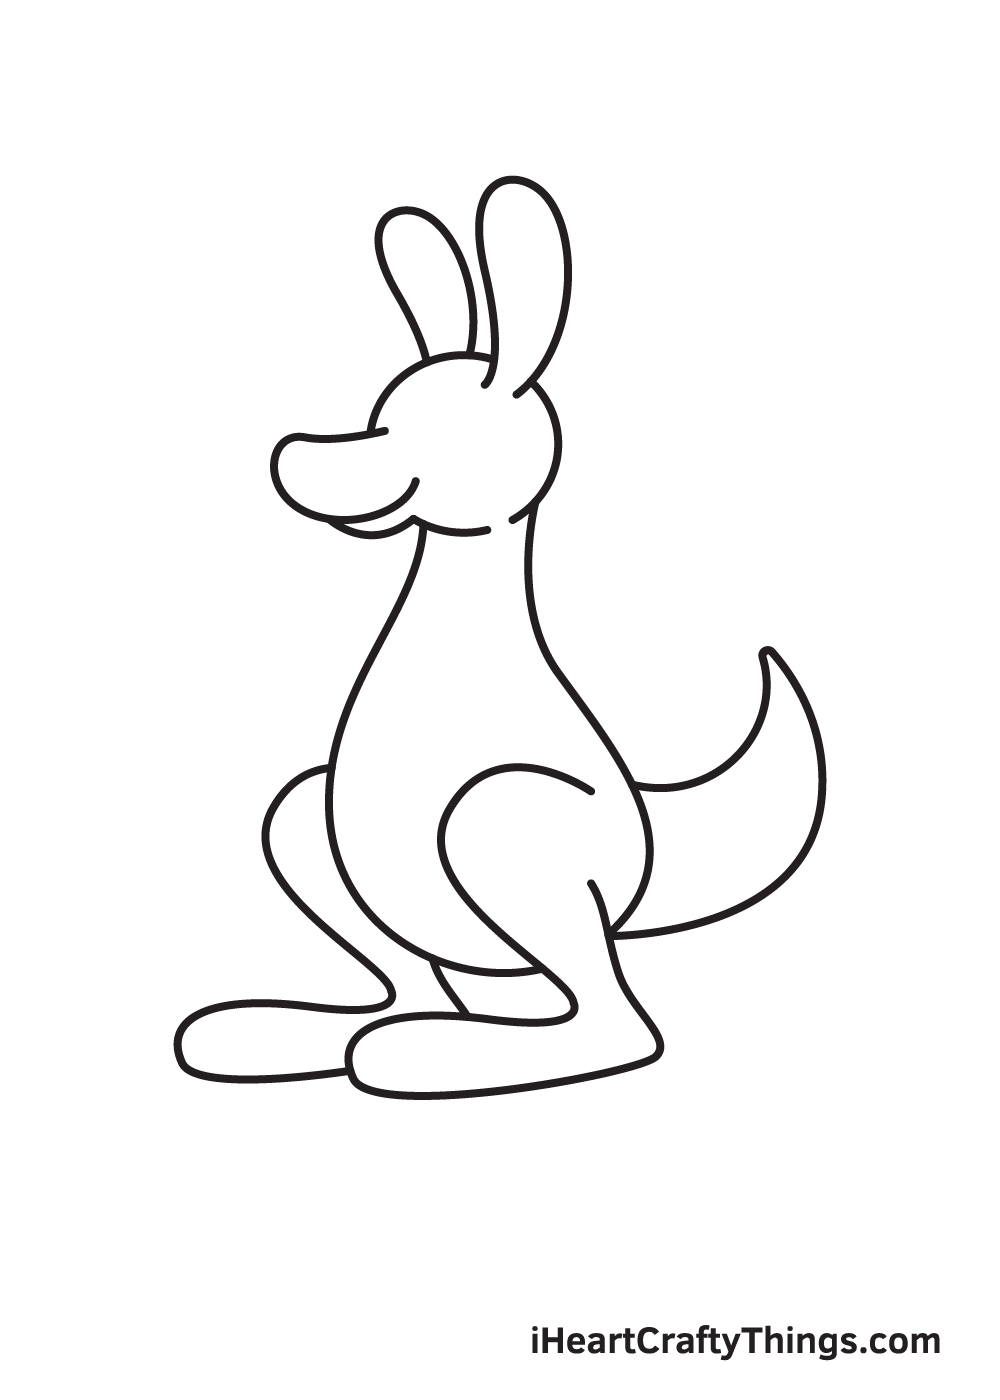 kangaroo drawing step 6